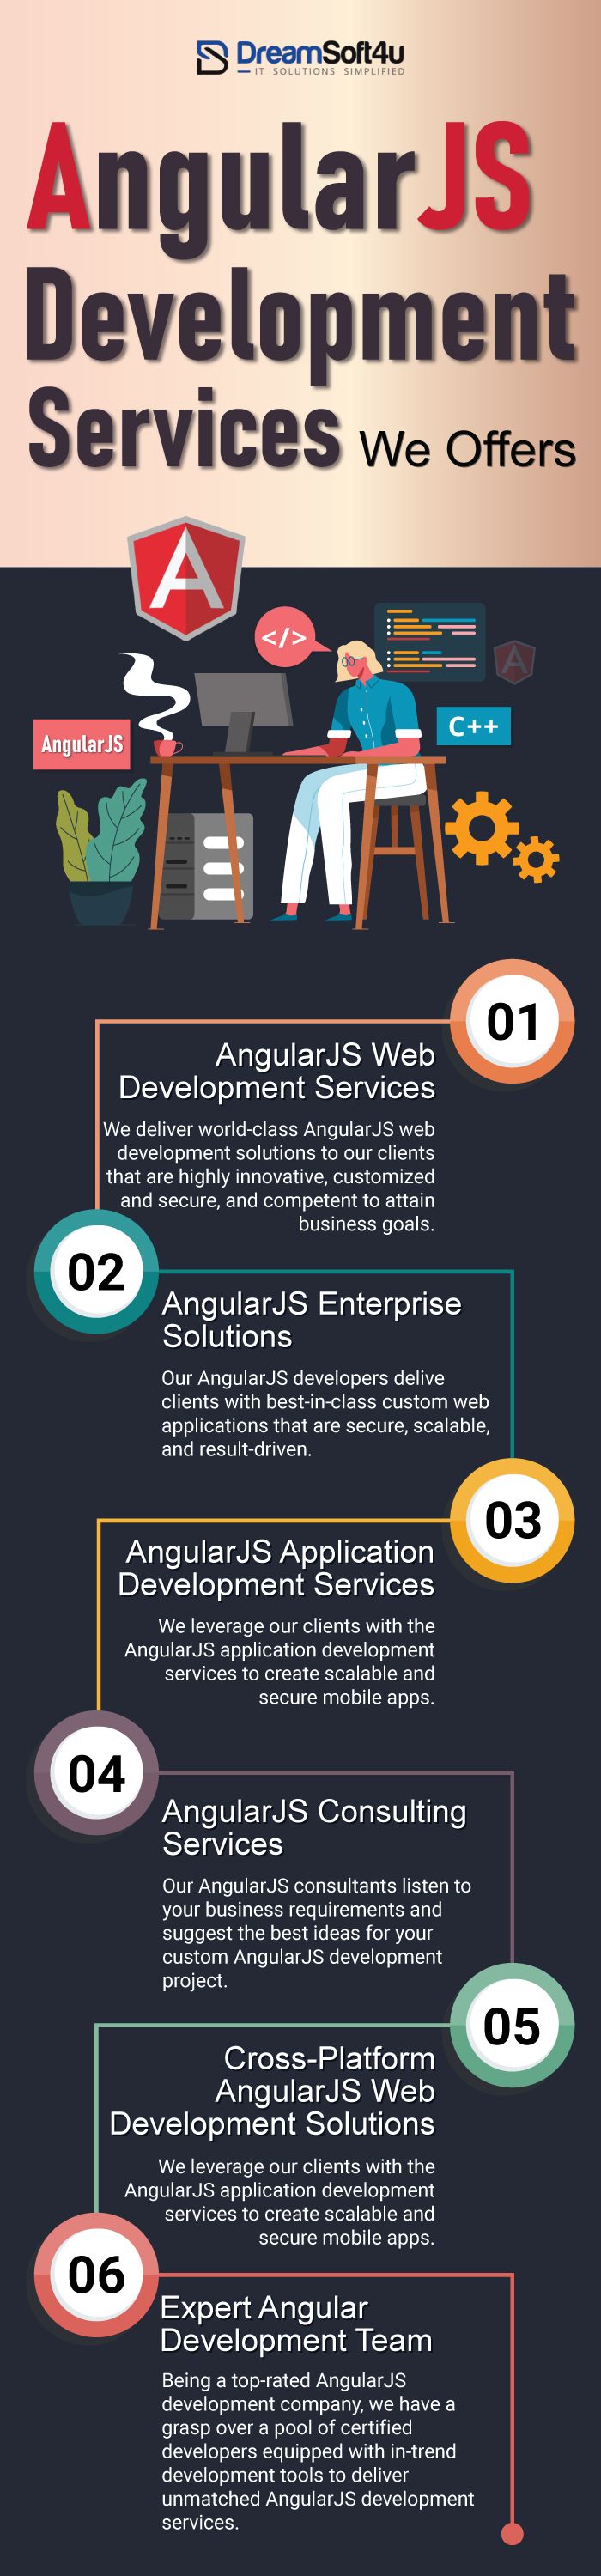 Best AngularJS Development Services